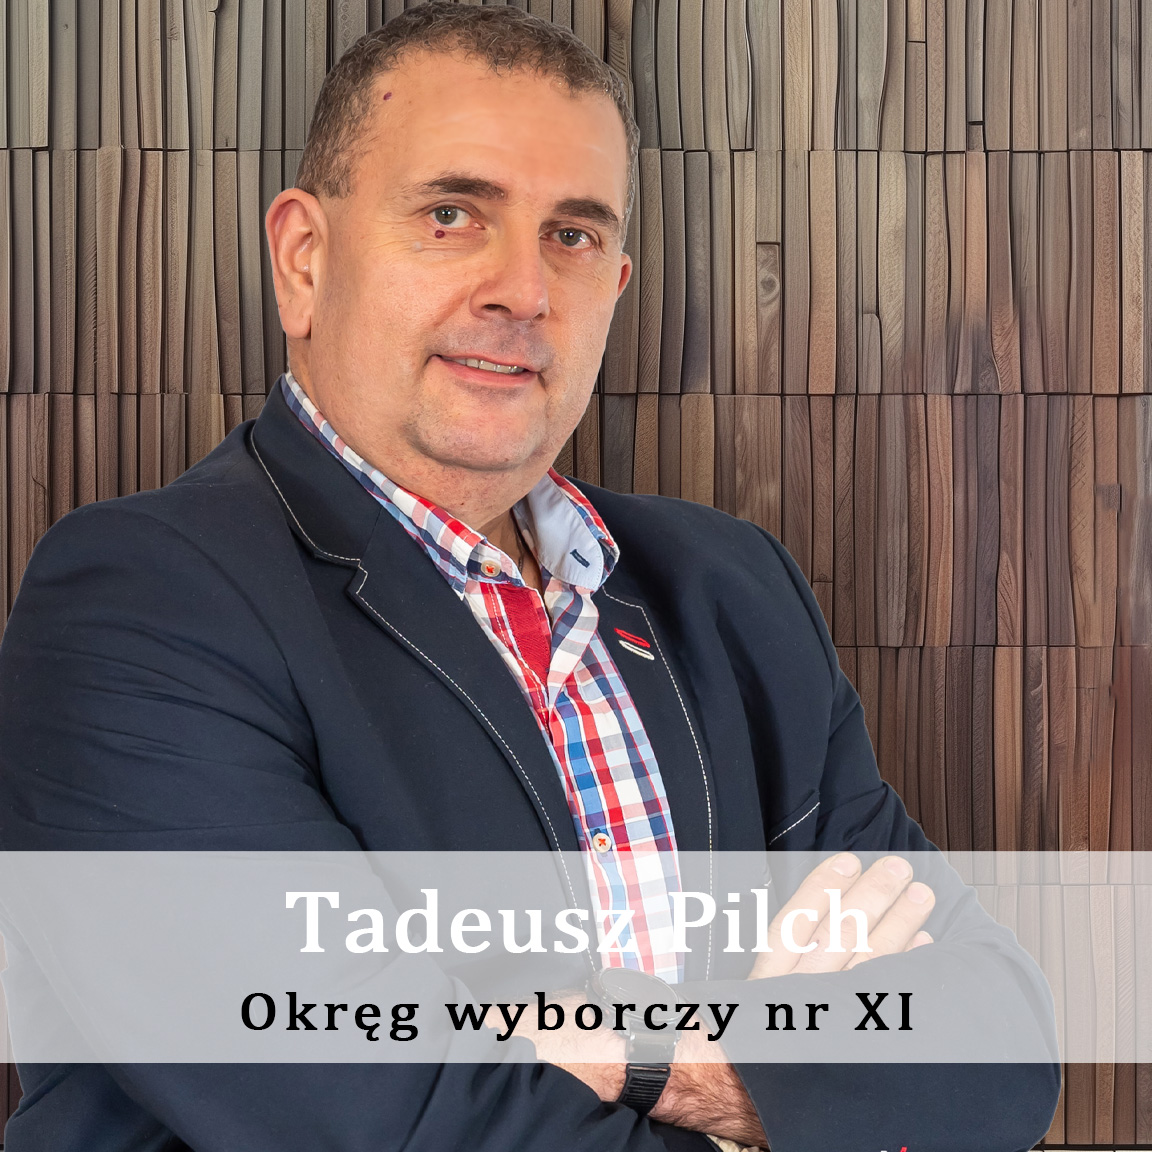 Tadeusz_Pilch_Polok-Okręg-wyporczy-nr-11-Radny-Miasto-Wisła